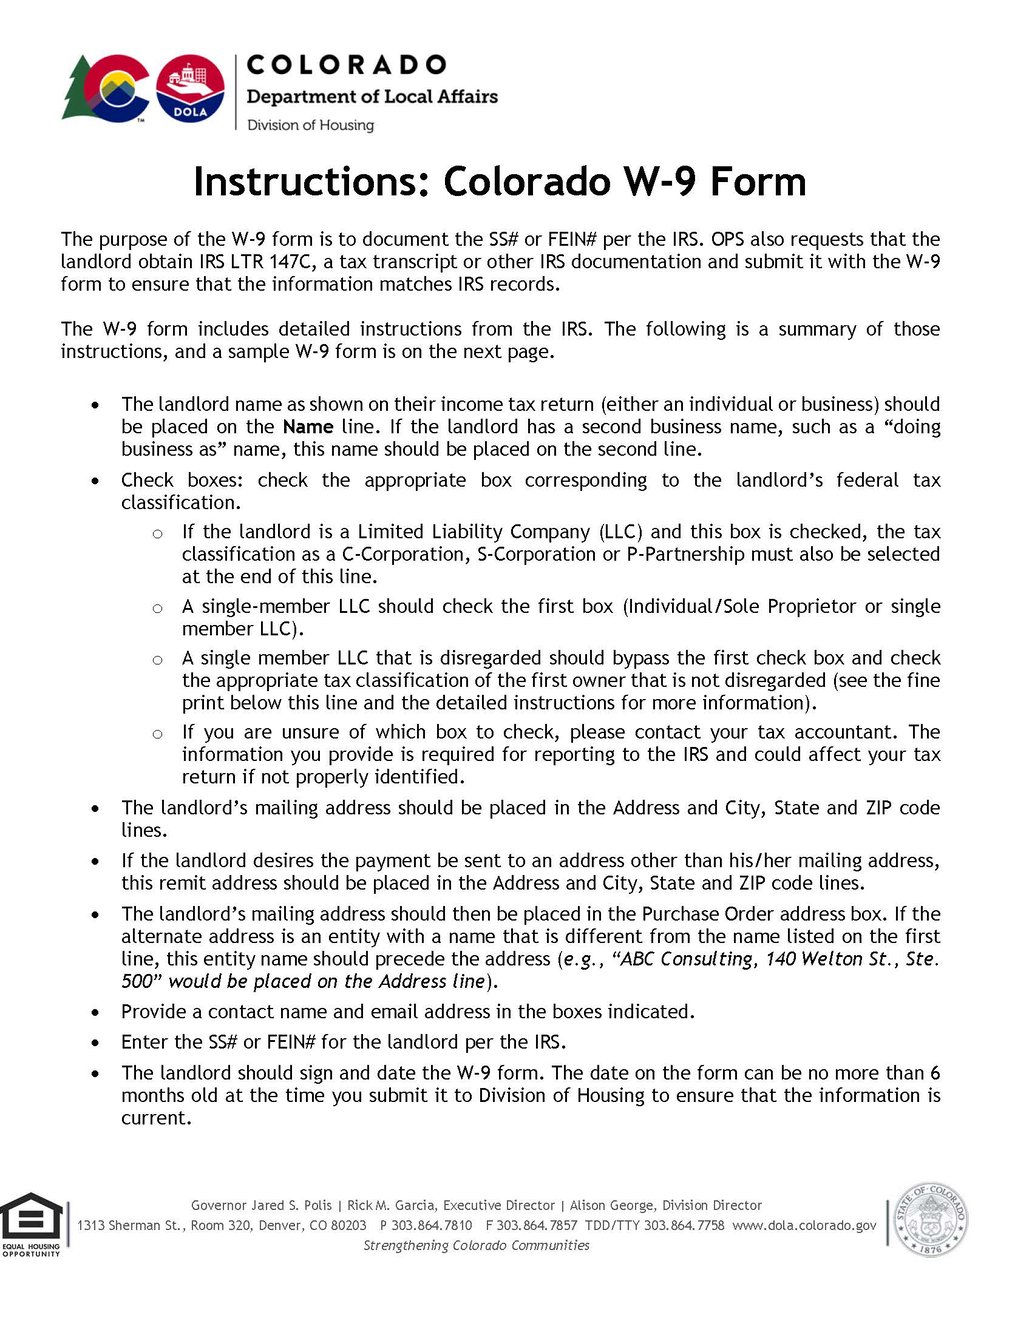 How do I fill out the Colorado W9 Form?